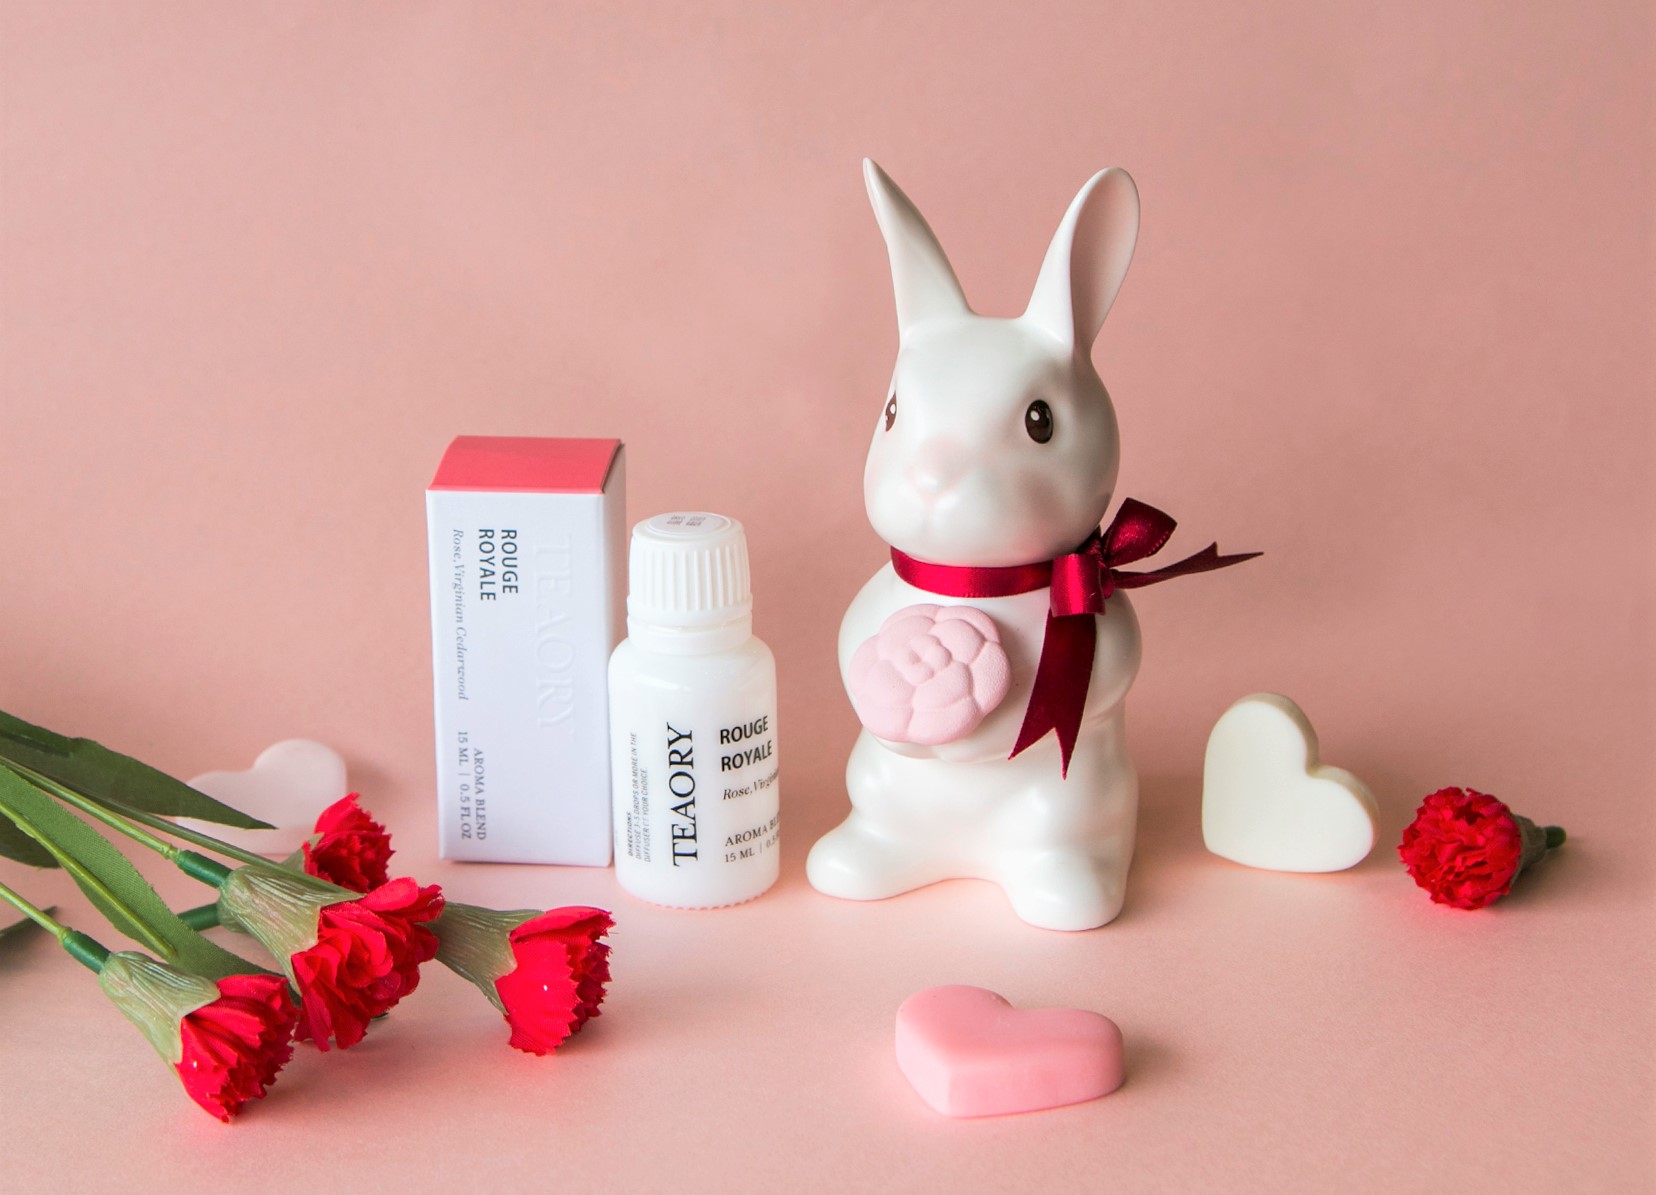 《邦尼先生 Mr. Bunny》雙手捧著綻放的小茶花，表達愛與關懷，是送給媽媽最美好的祝福，搭配「皇家胭脂」複方精華，傳達愉悅香氣及療癒心情。